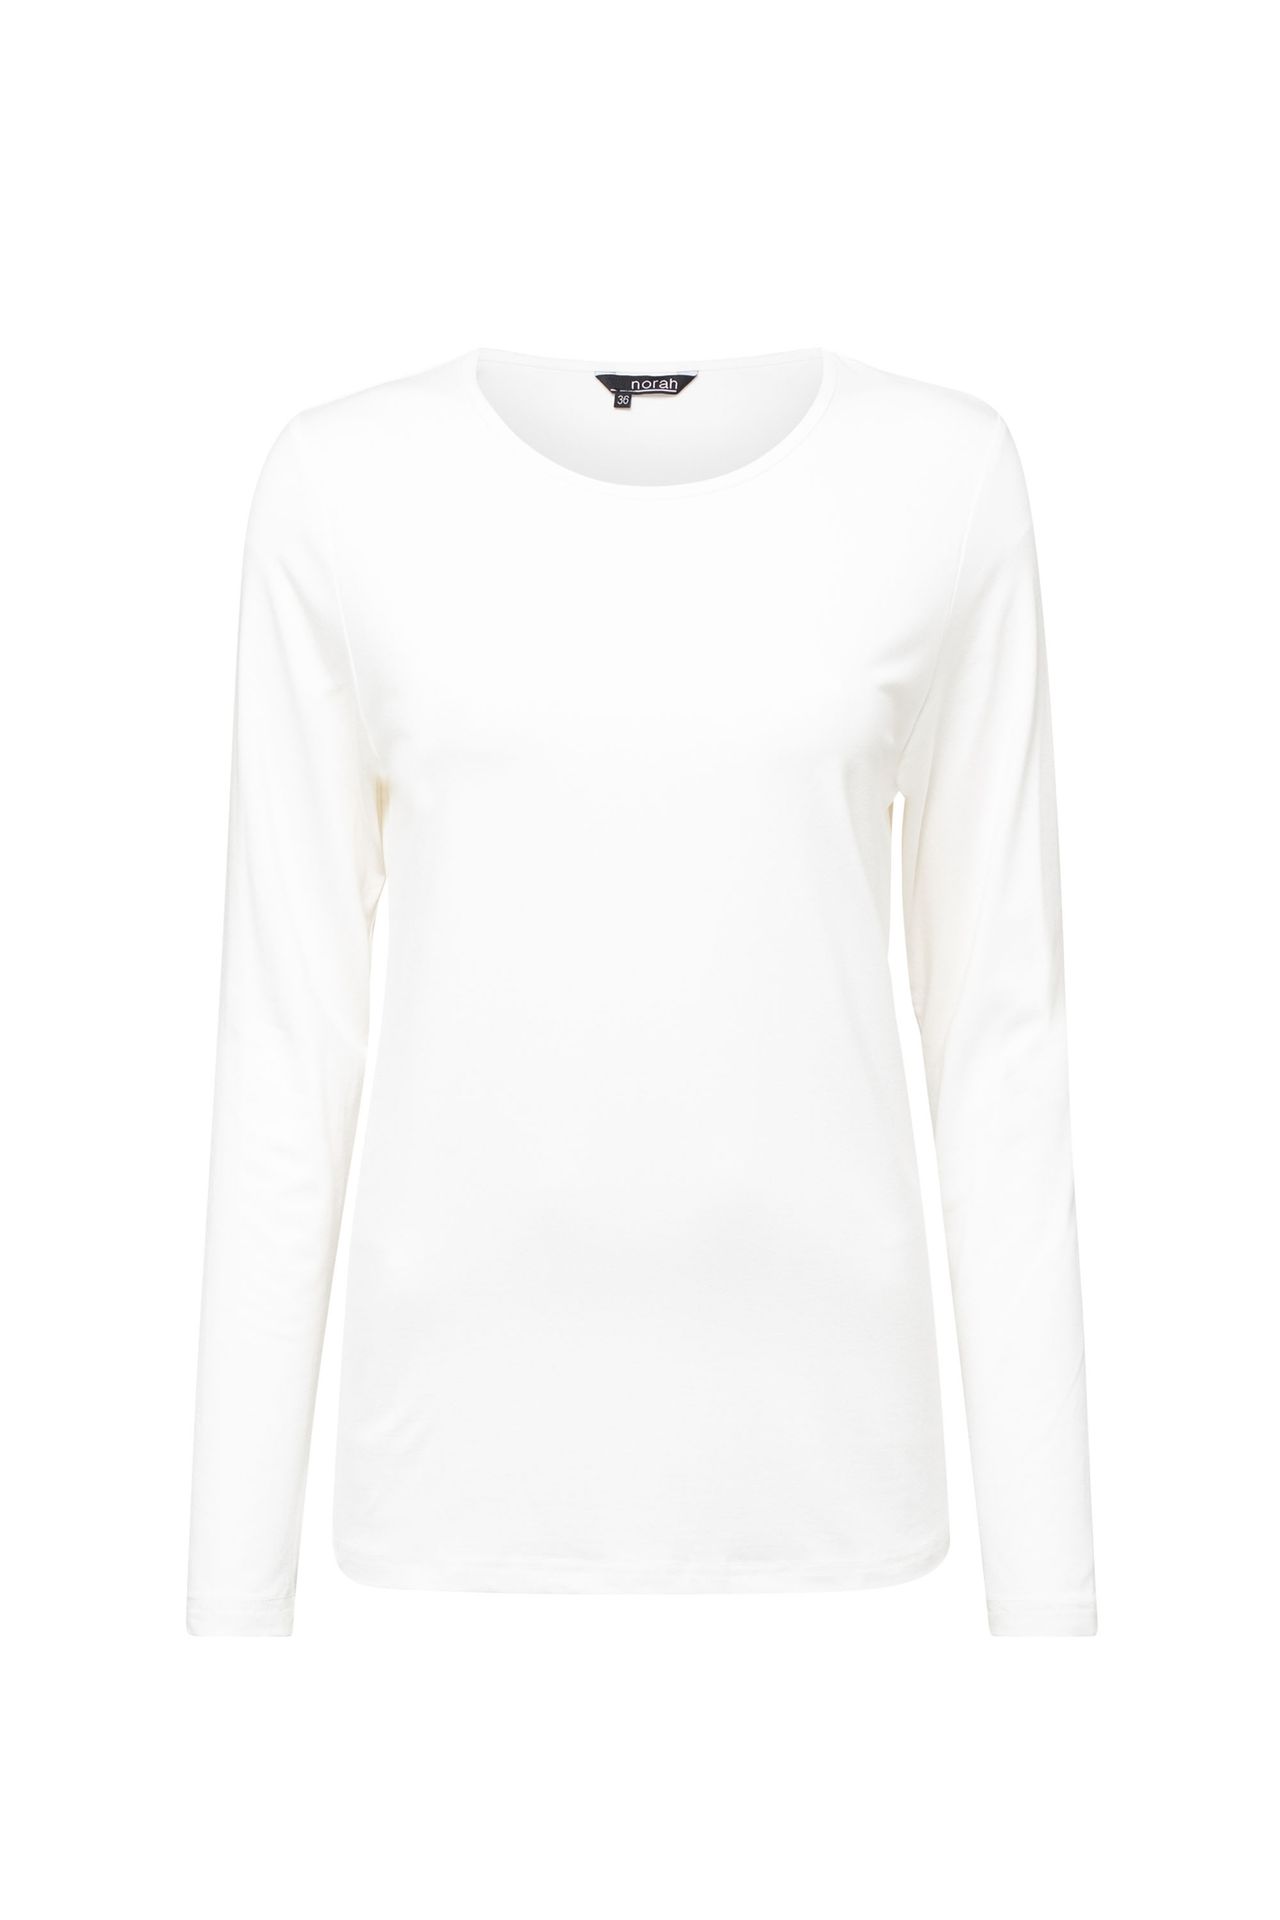  Shirt gebroken wit off-white 212206-101-44